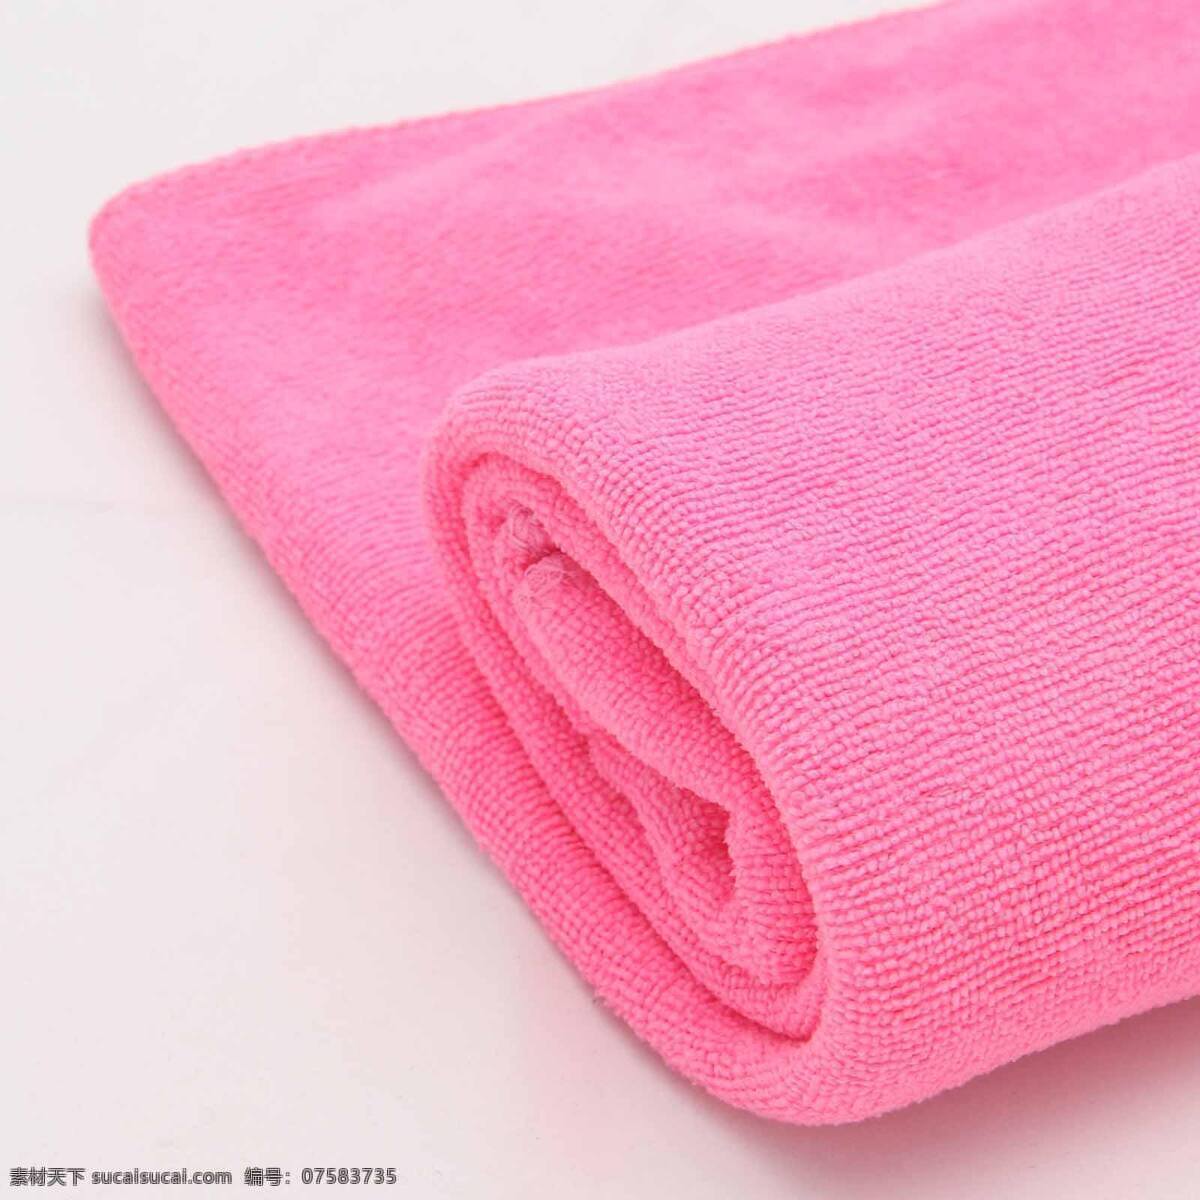 粉色毛巾 粉色 酒店 毛巾 浴巾 酒店用品 洗漱用品 白色毛巾 面巾 浴袍 洗浴 生活素材 生活百科